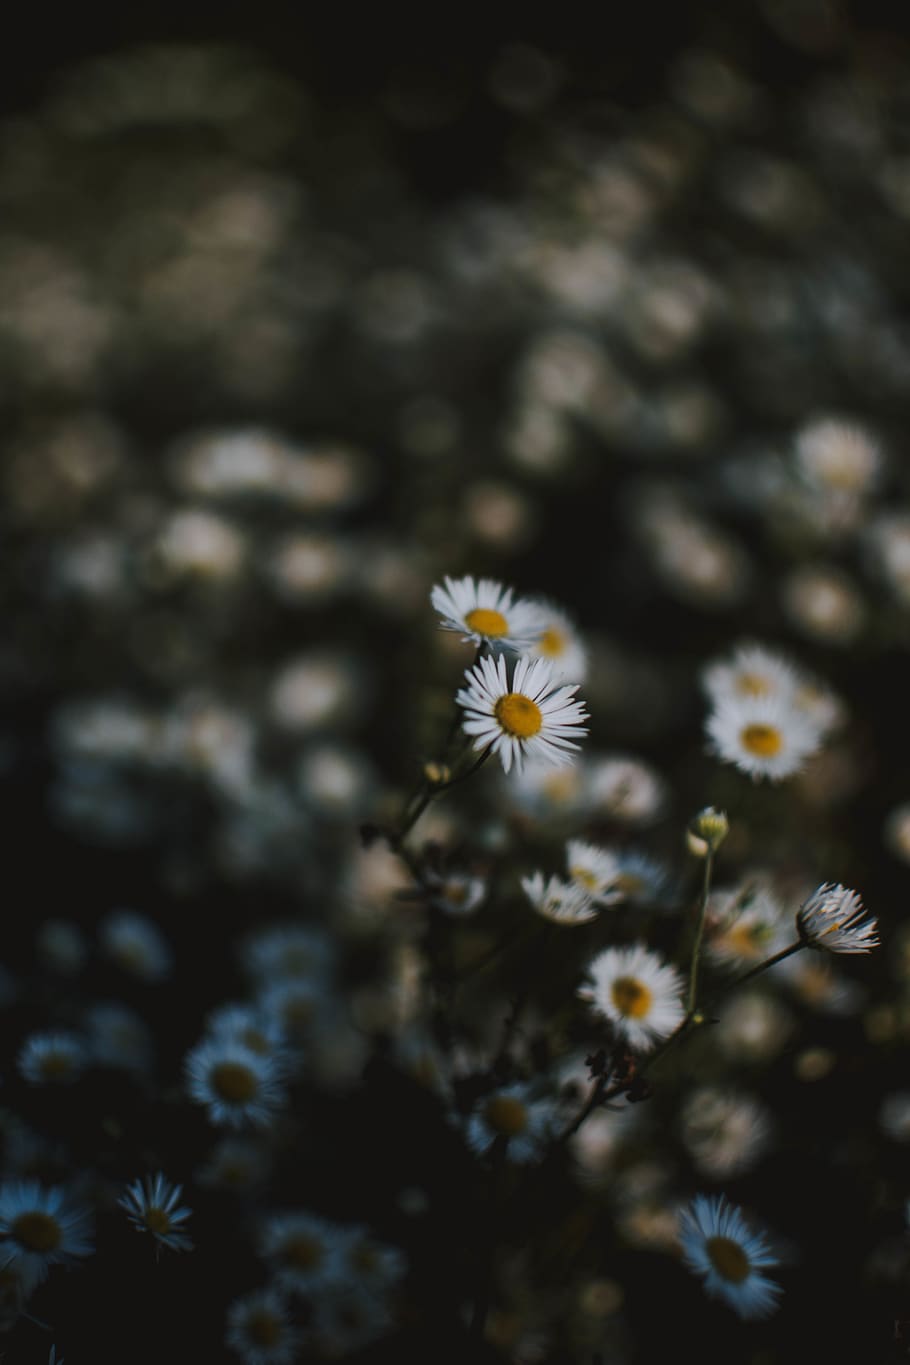 Trong không gian nhẹ nhàng của White Chamomile, bạn sẽ cảm thấy được sự yên bình. Những hình ảnh đẹp mắt với hoa camomile trắng trẻo sẽ giúp bạn thư giãn tối đa, đặc biệt là khi sử dụng như hình nền.